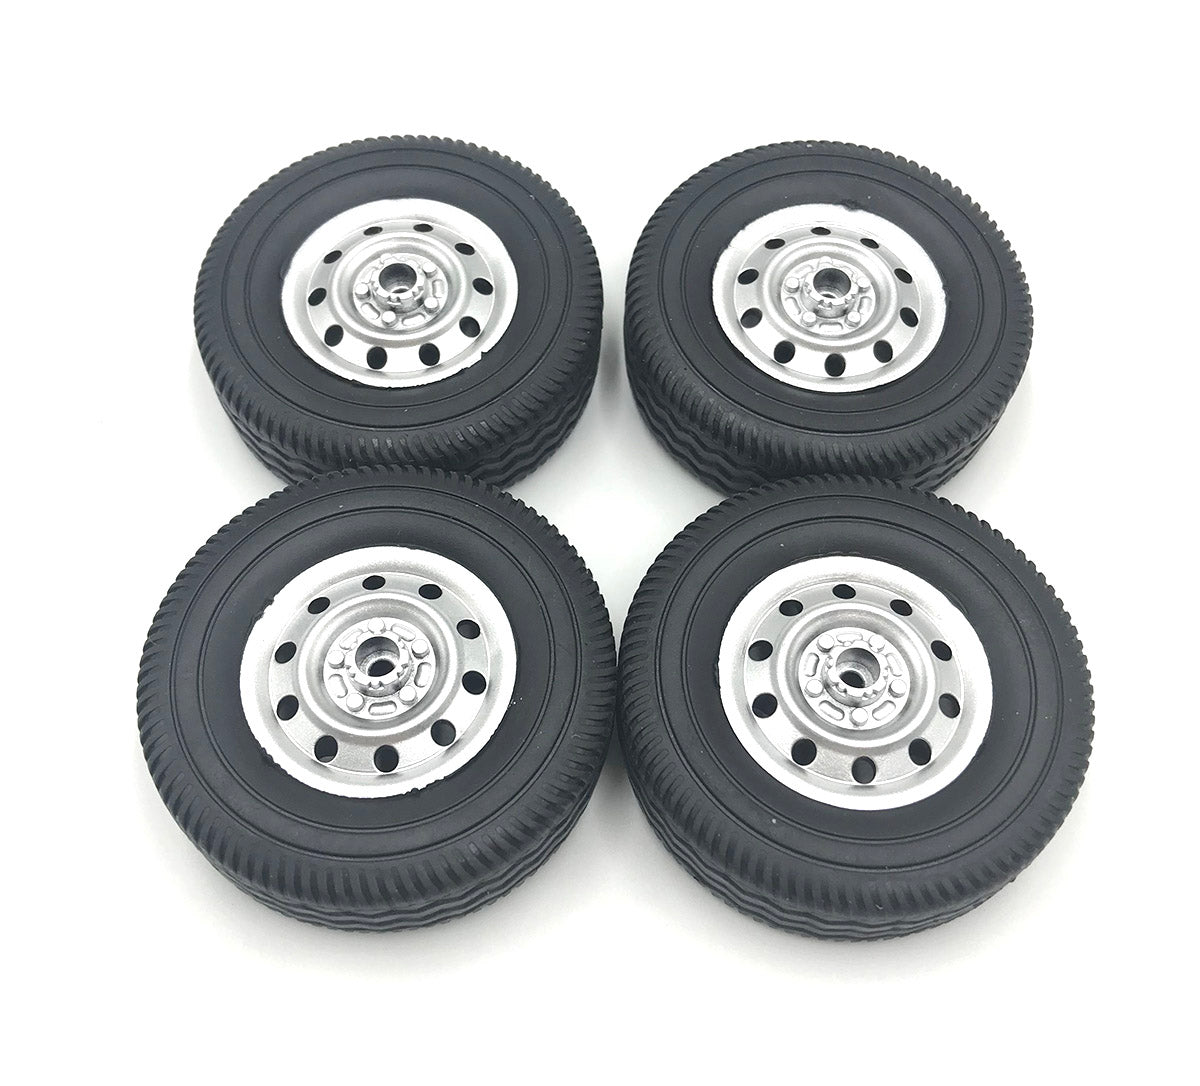 D12 D42 Wheels & Tires - 4 pieces - WPL RC Official Store